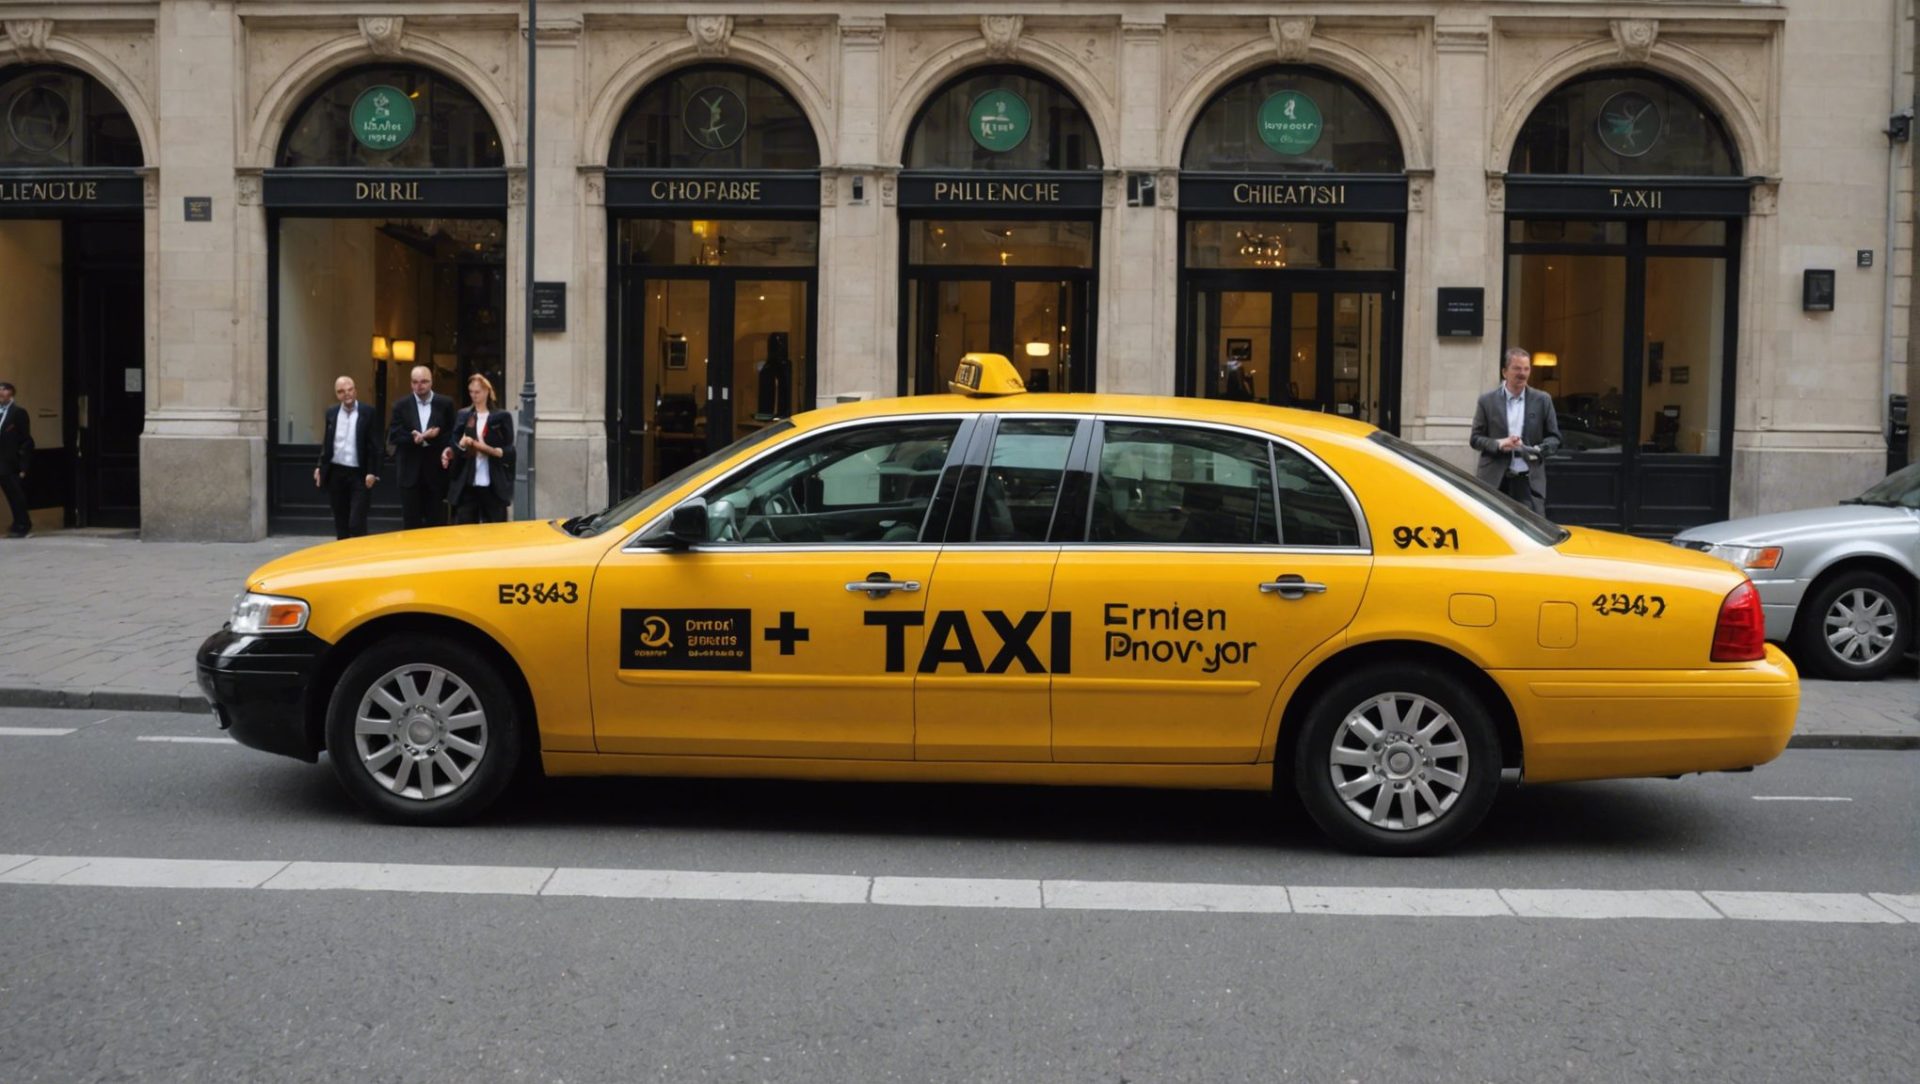 réservez facilement un taxi avec chauffeur privé en belgique en suivant nos conseils pour une expérience de voyage confortable et efficace.